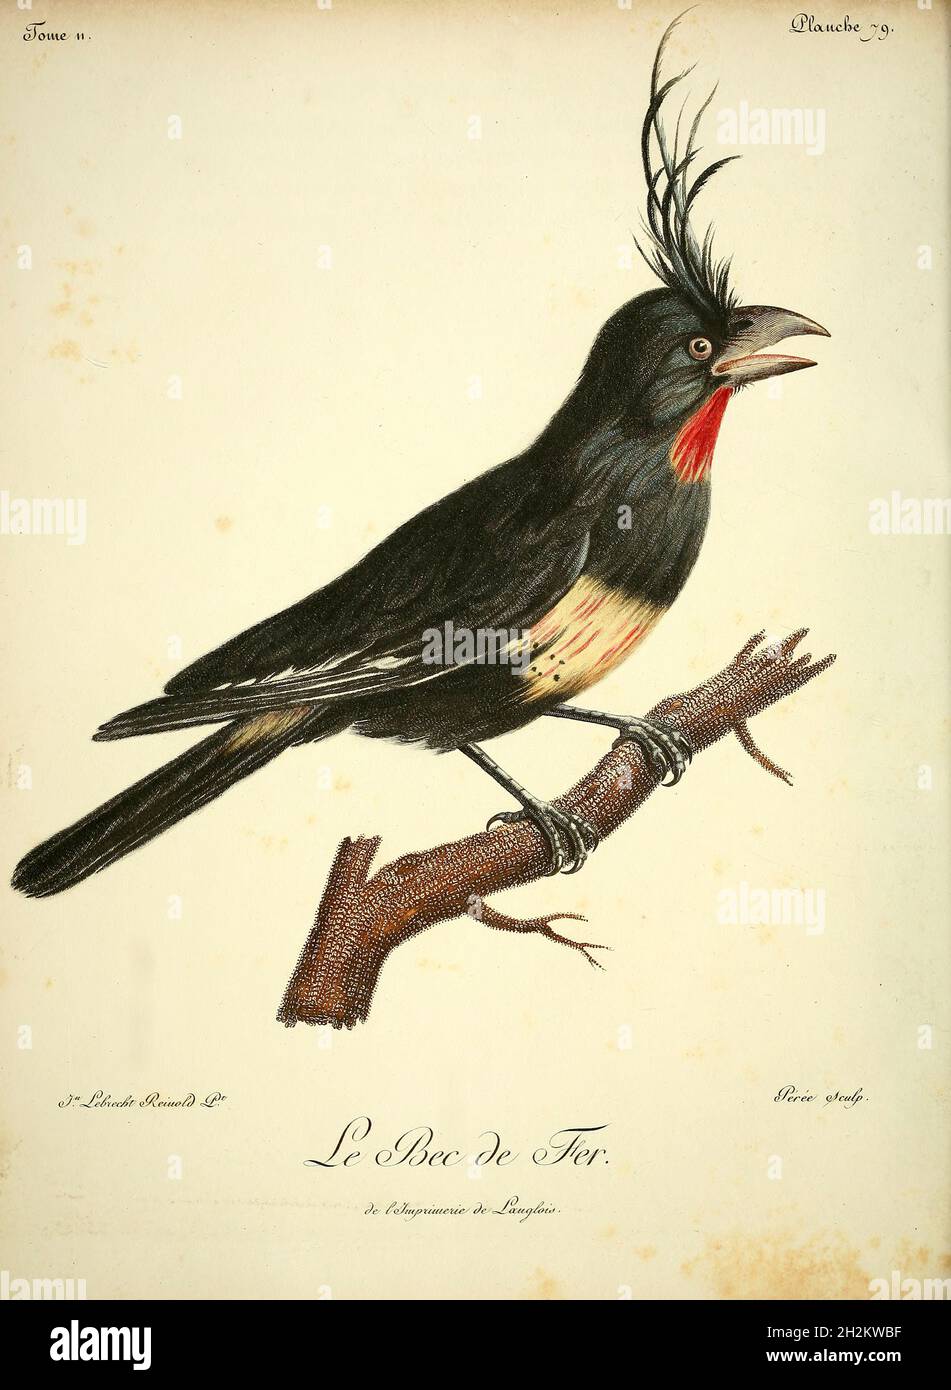 Oiseau imaginaire, illustration du XVIIIe siècle Banque D'Images